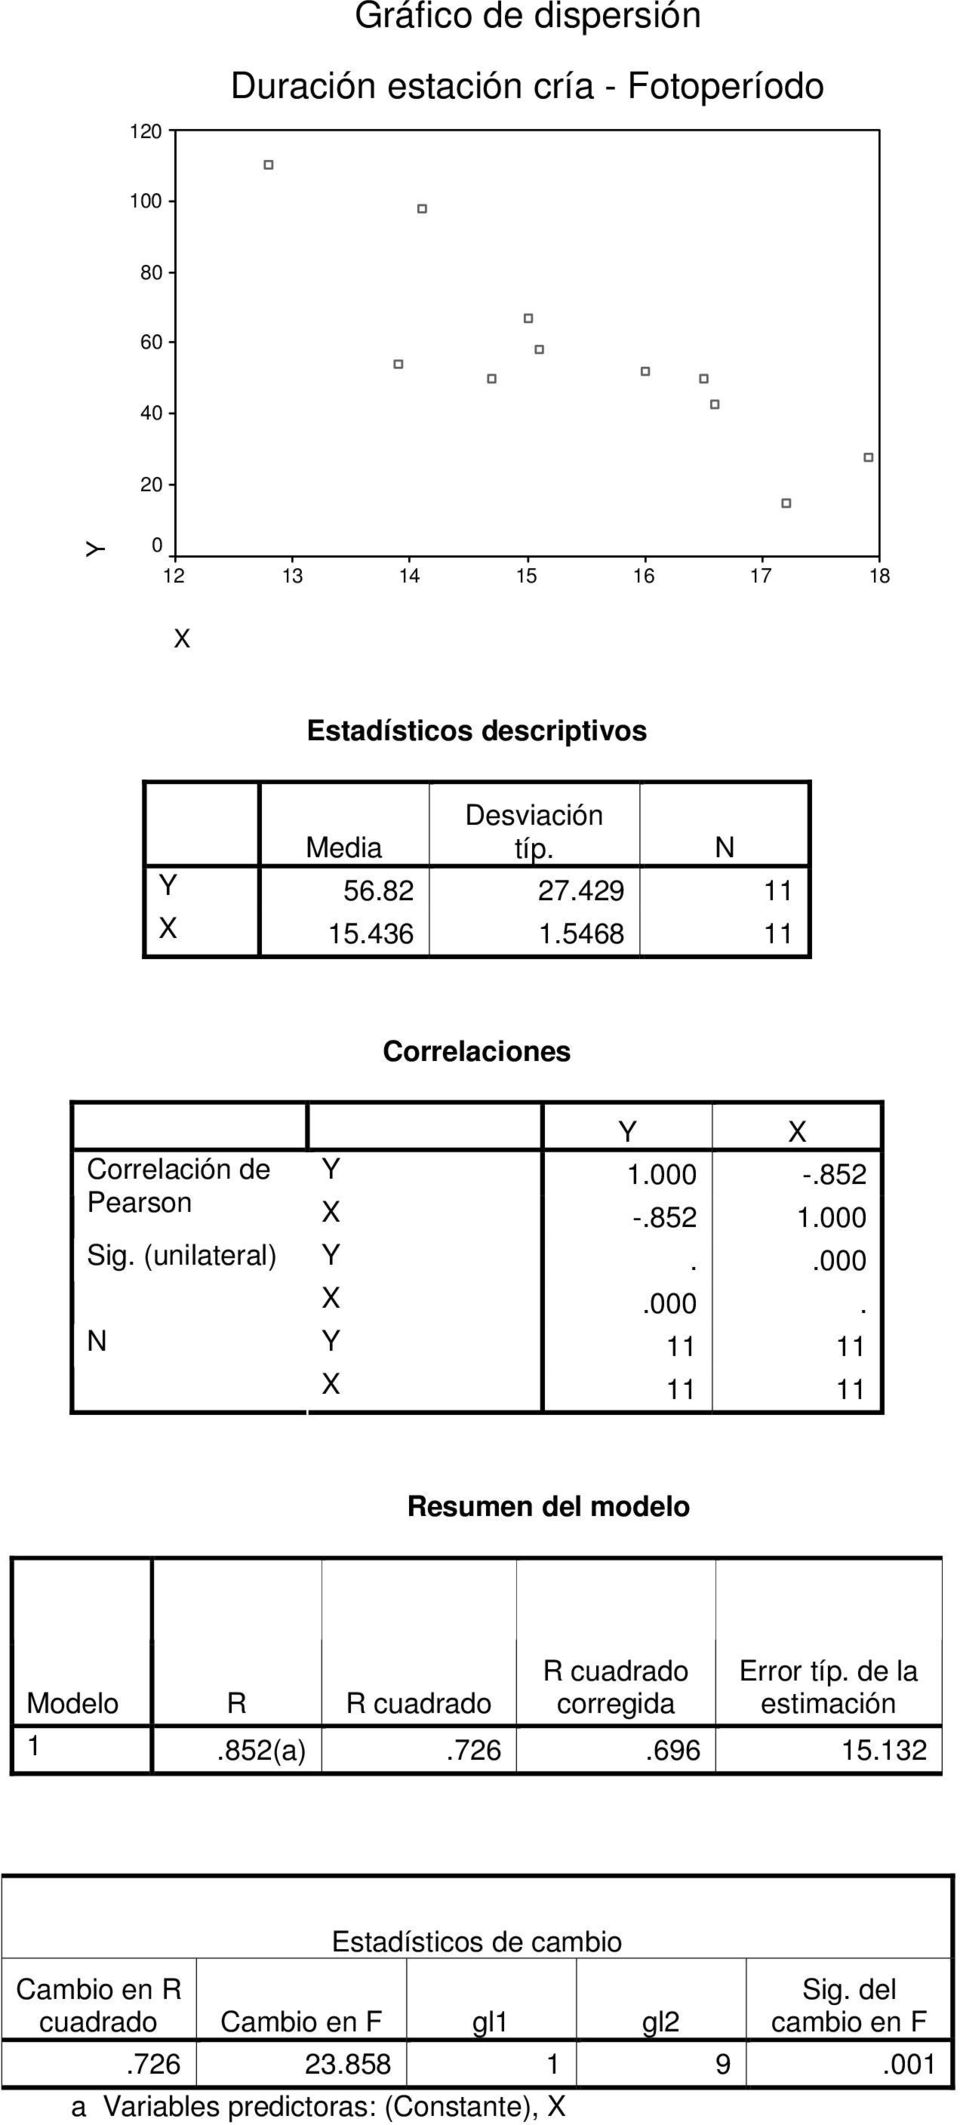 (unilateral) Y..000 X.000. N Y 11 11 X 11 11 Resumen del modelo R cuadrado Error típ. de la Modelo R R cuadrado corregida estimación 1.852(a).